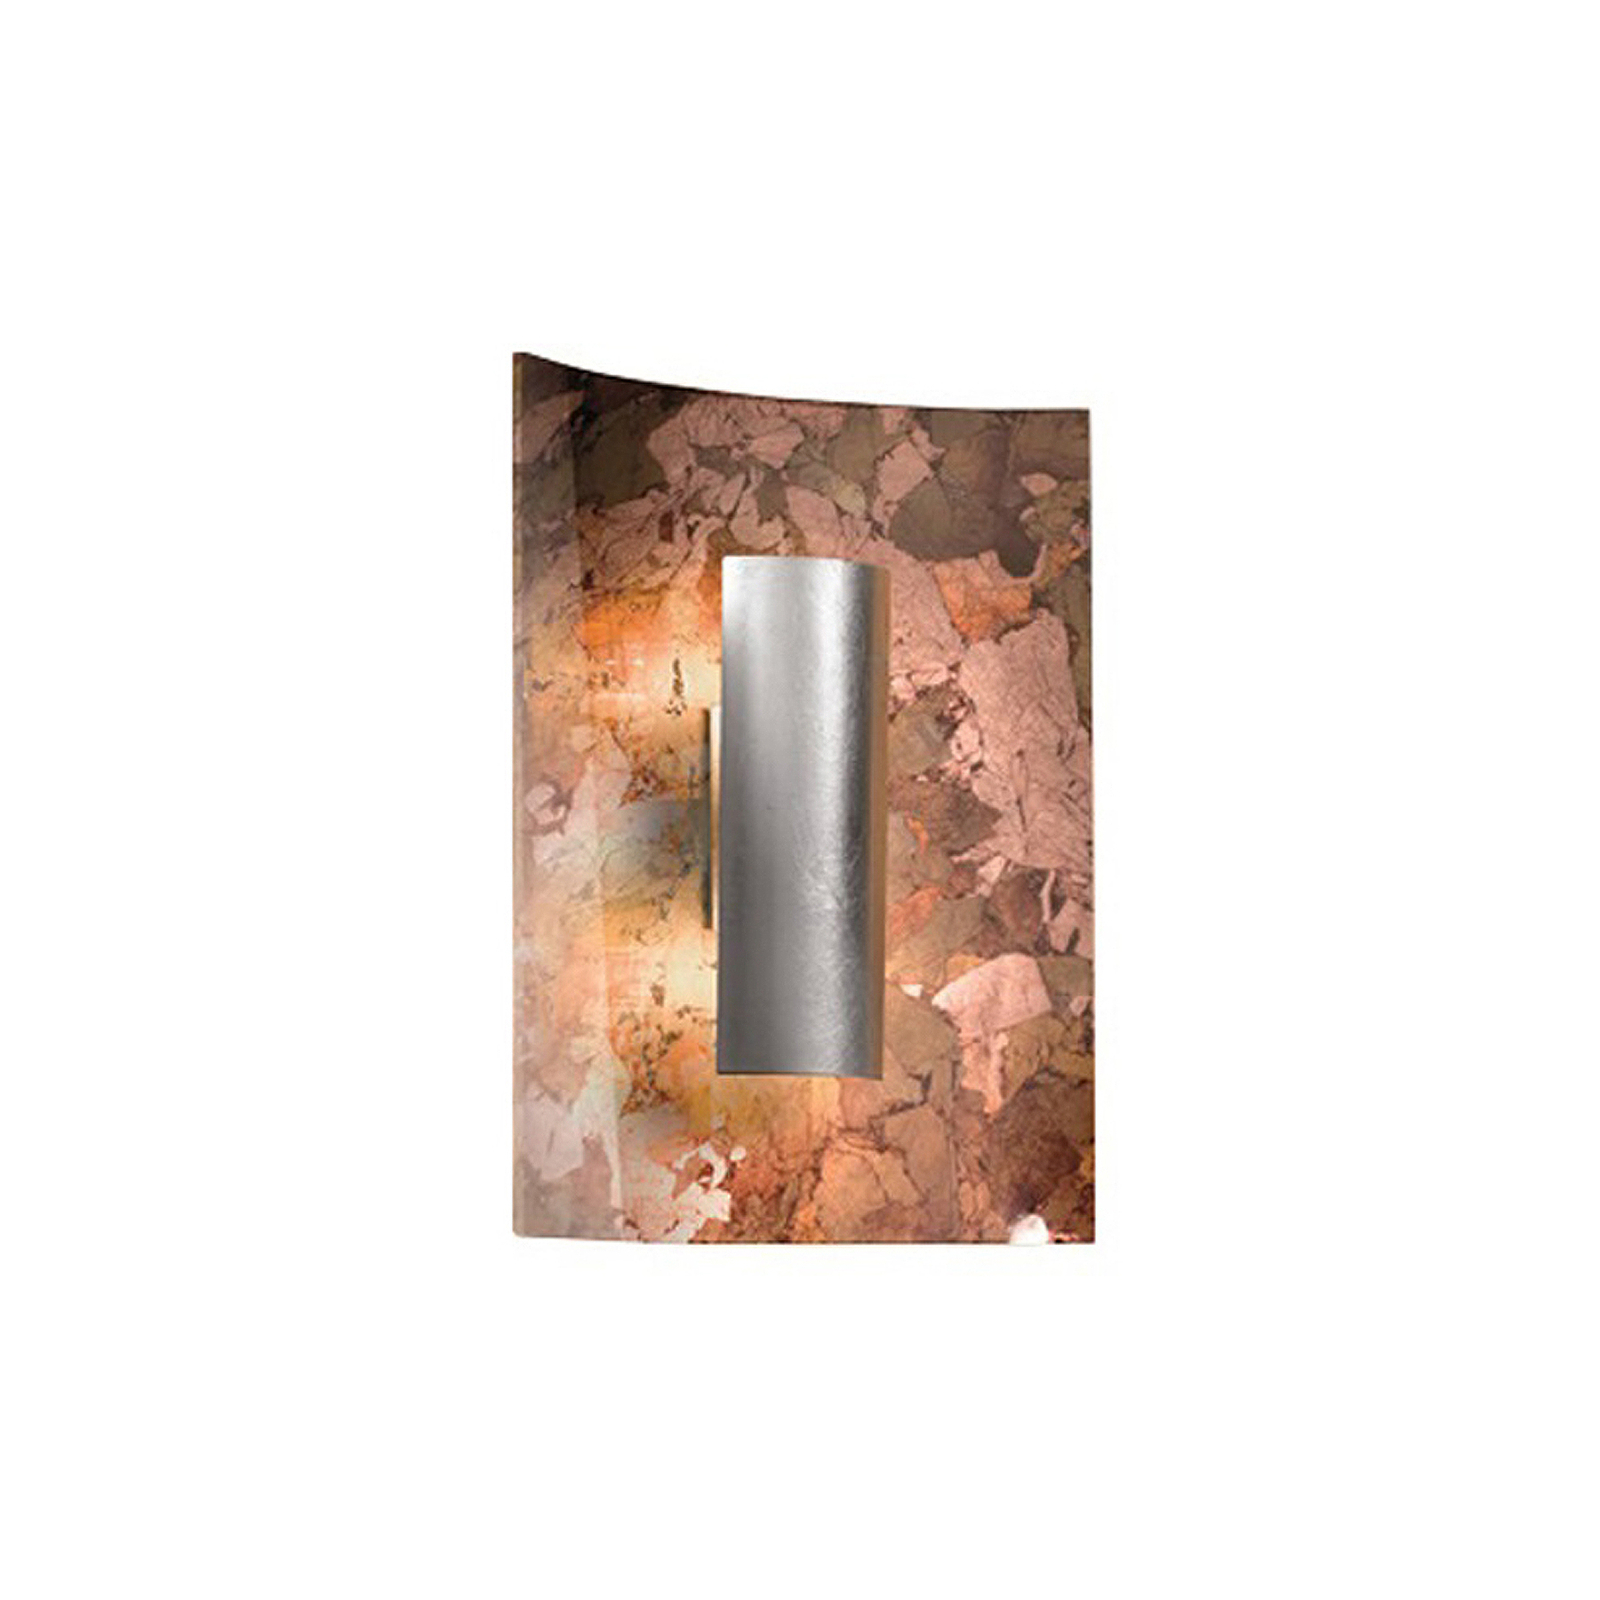 Aura Efterår væglampe, bladfolieforsølvet, 30 cm